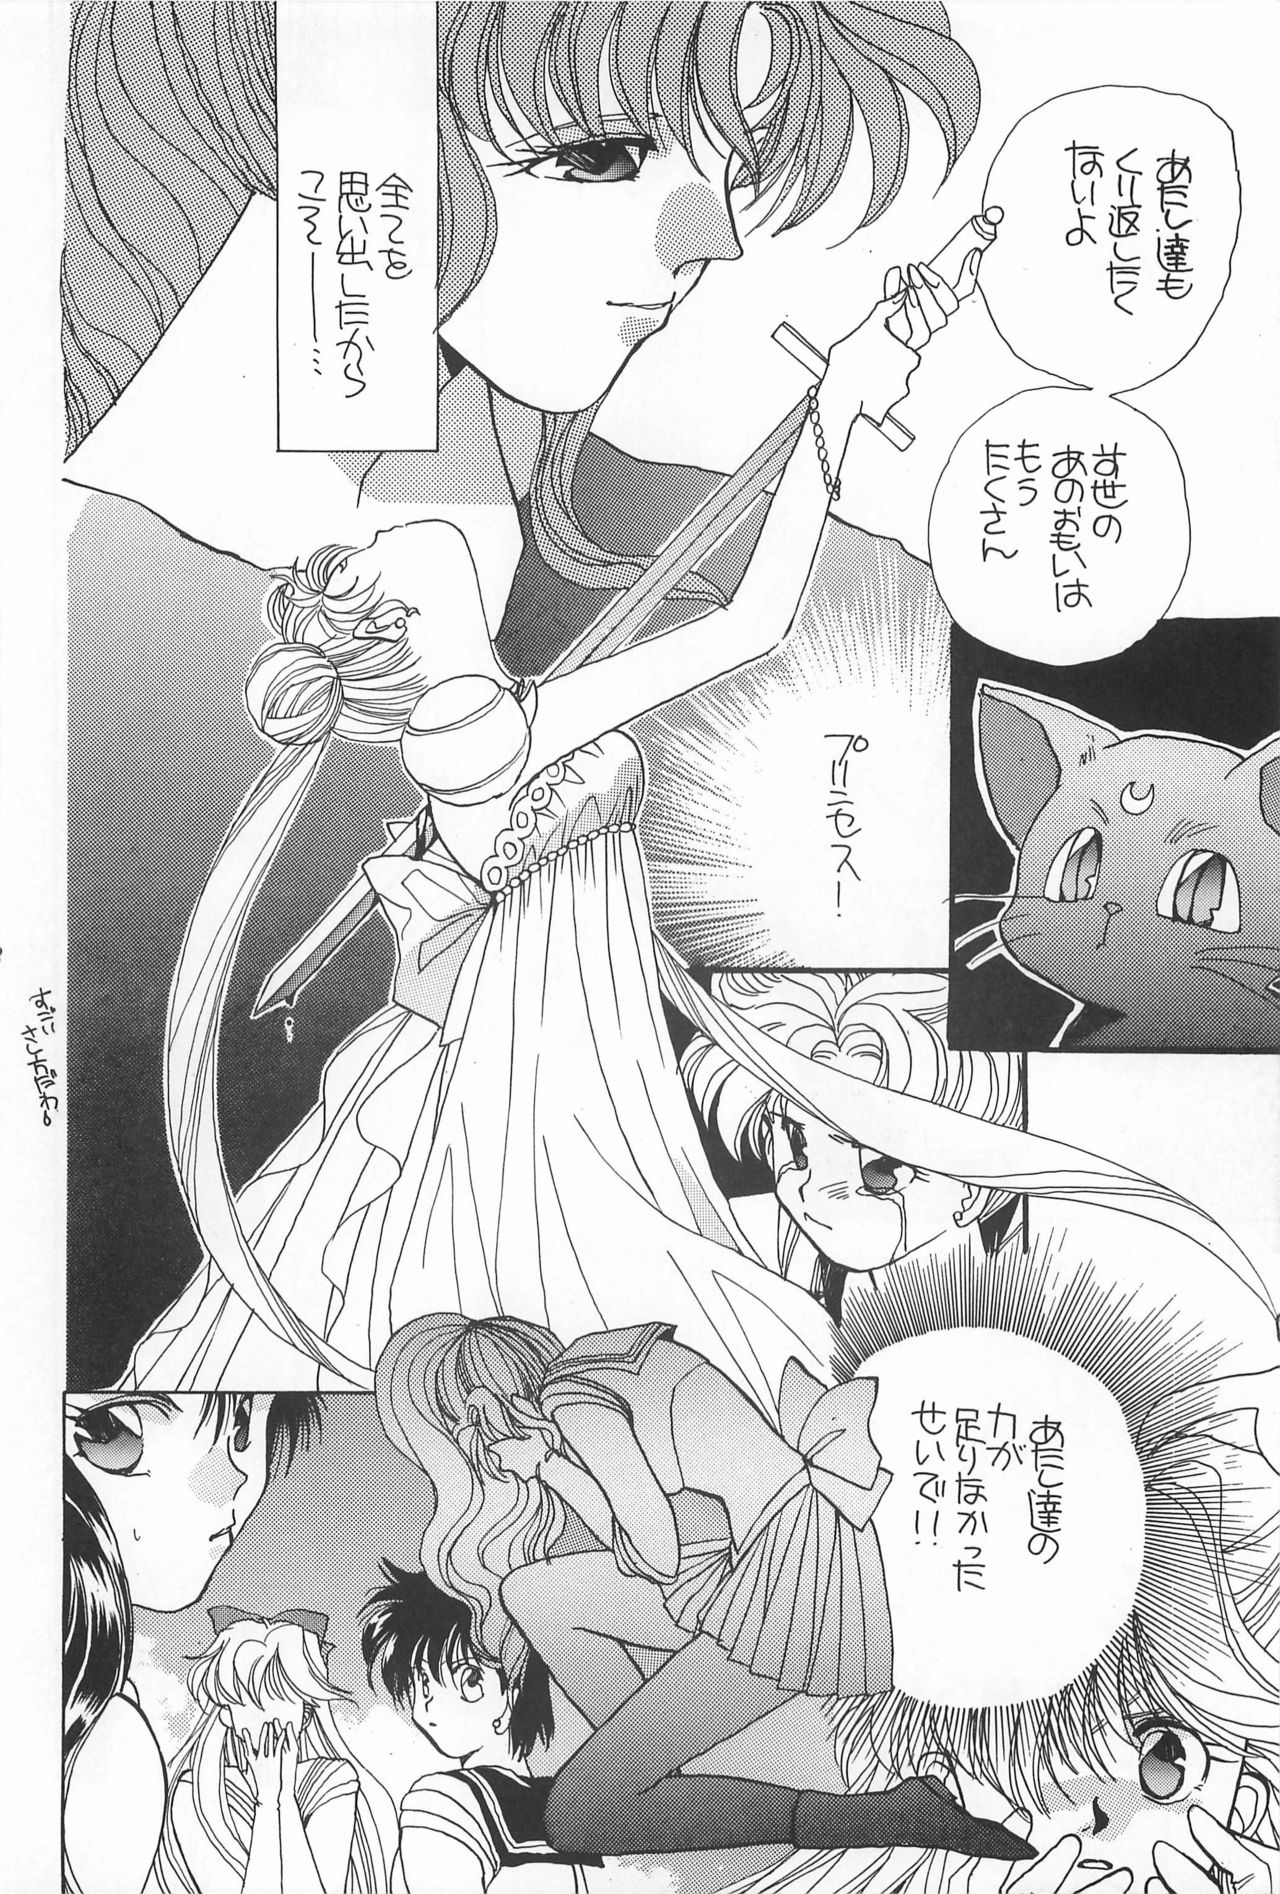 [Hello World (Muttri Moony)] Kaze no You ni Yume no You ni - Sailor Moon Collection (Sailor Moon) 161